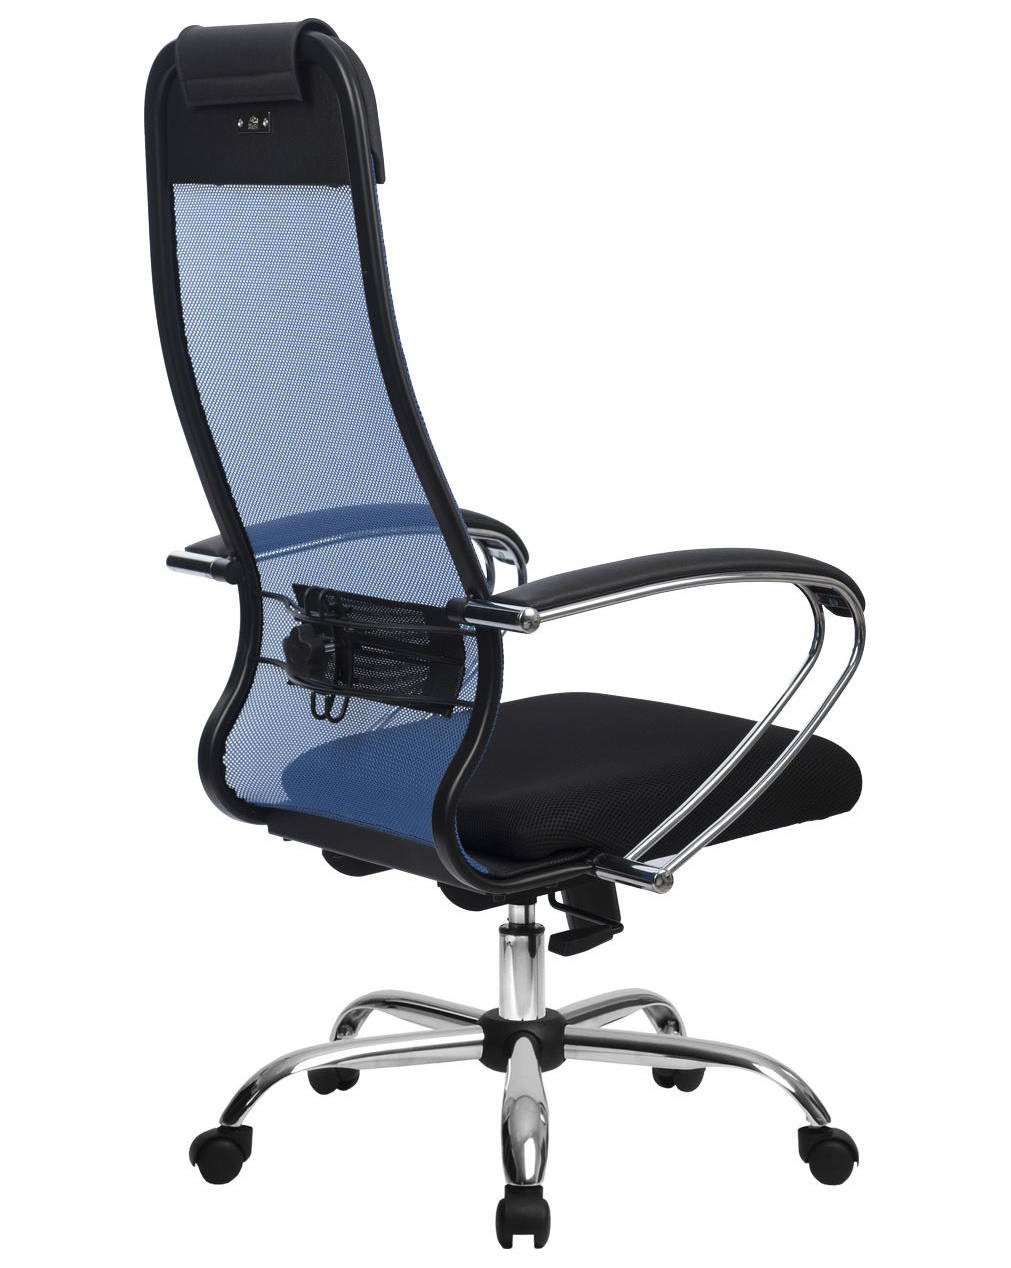 Кресло руководителя офисное кресло метта su bp 8